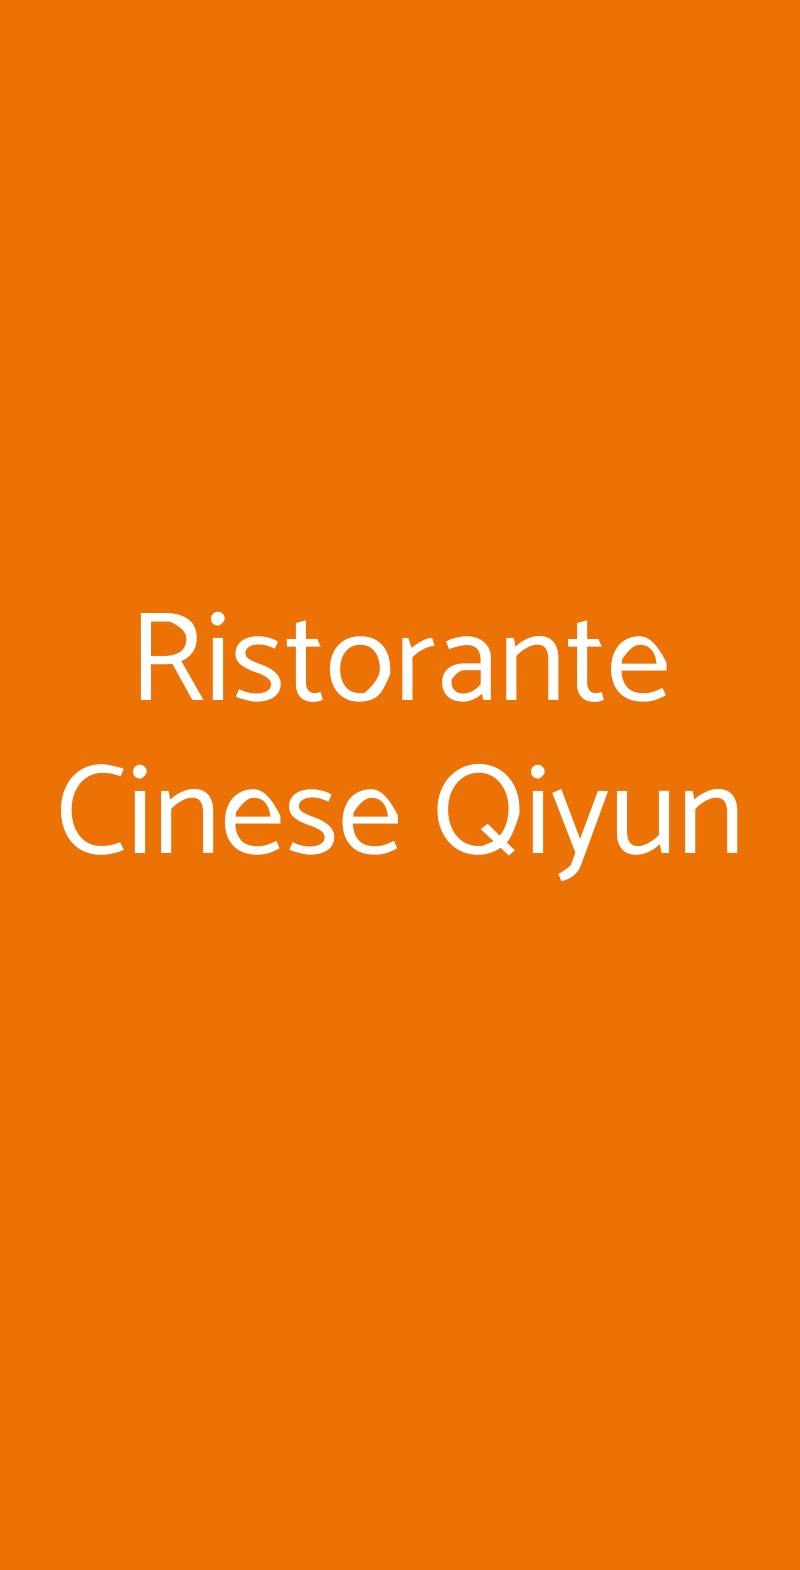 Ristorante Cinese Qiyun Milano menù 1 pagina